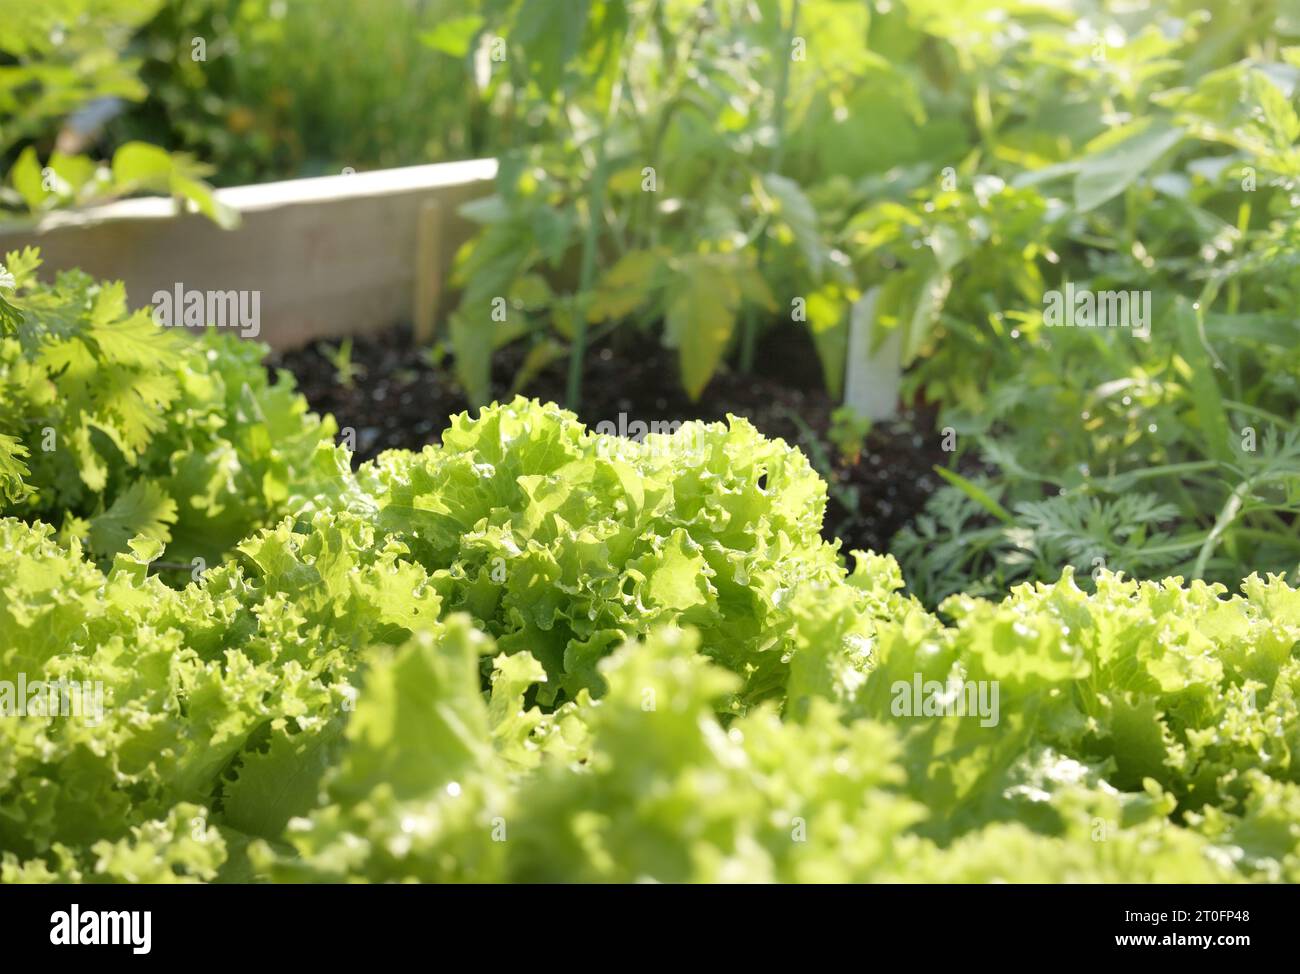 Salat aus Romain, der an sonnigen Tagen im Garten wächst. Viele reife Salatpflanzen im Hochgartenbeet. Hellgrüner gelber Salat bereit für die Ernte. Stockfoto